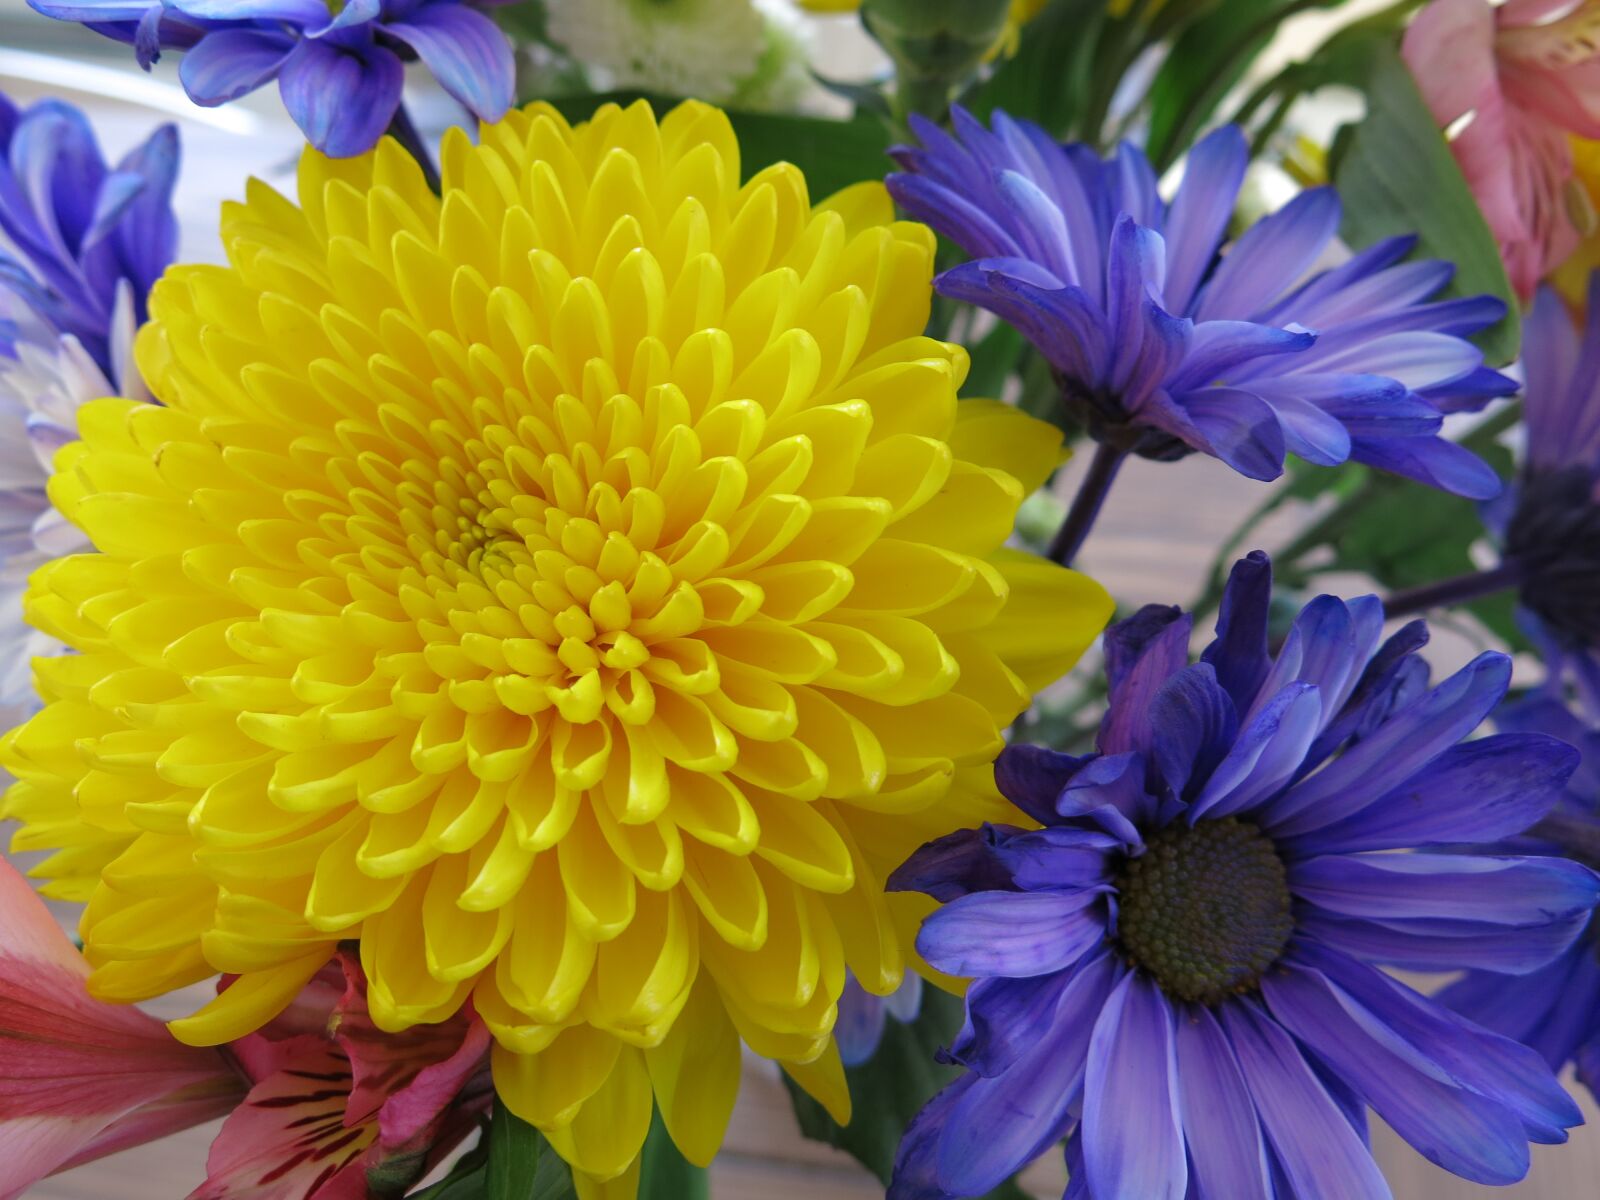 Canon PowerShot G15 sample photo. Flowers, chrysanthemum, mum photography